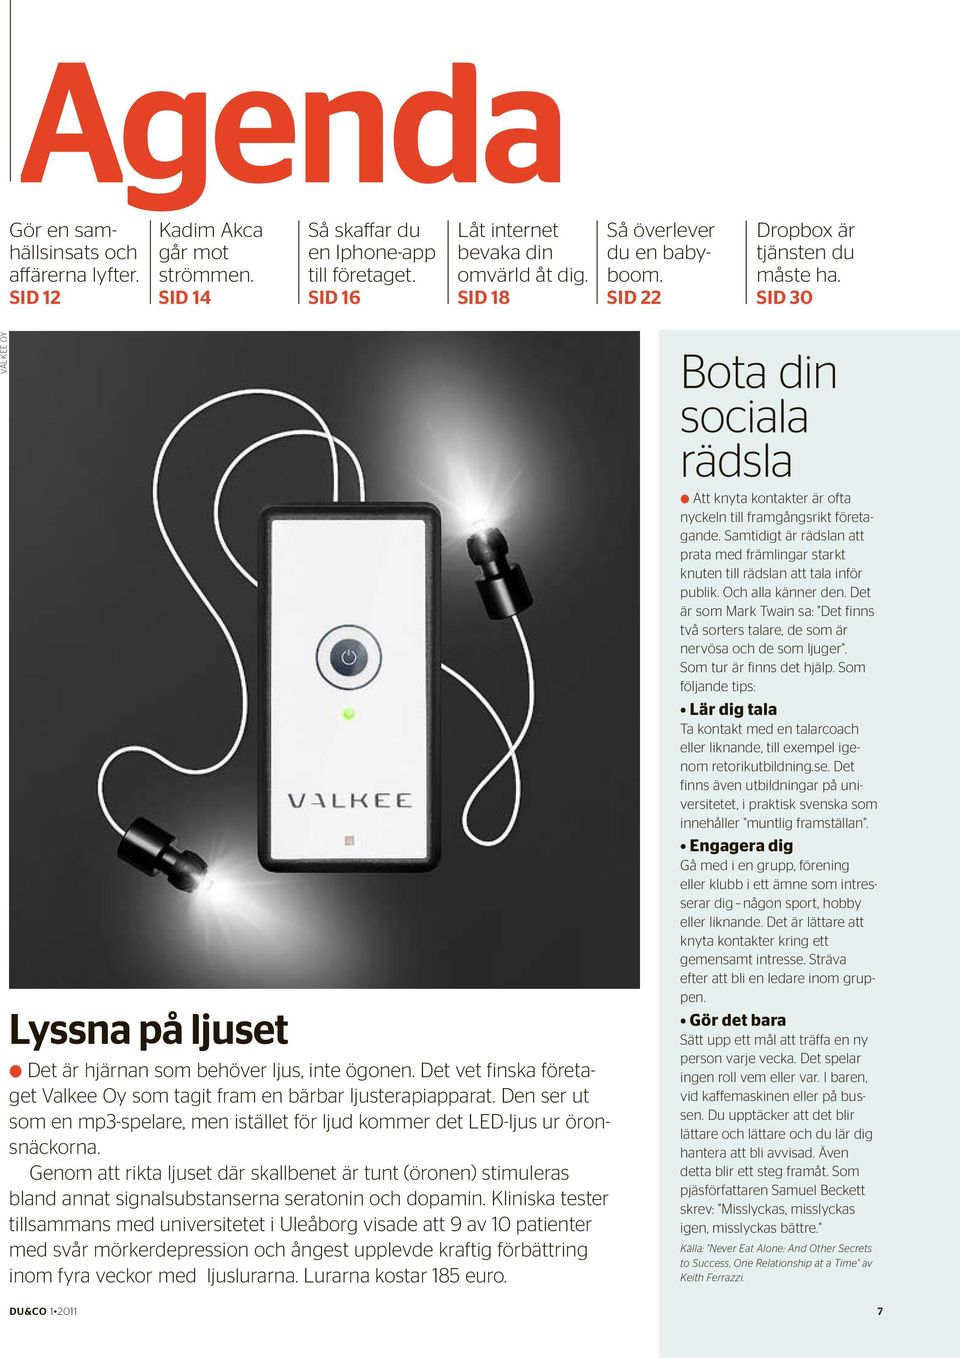 Det vet finska företaget Valkee Oy som tagit fram en bärbar ljusterapiapparat. Den ser ut som en mp3-spelare, men istället för ljud kommer det LED-ljus ur öronsnäckorna.